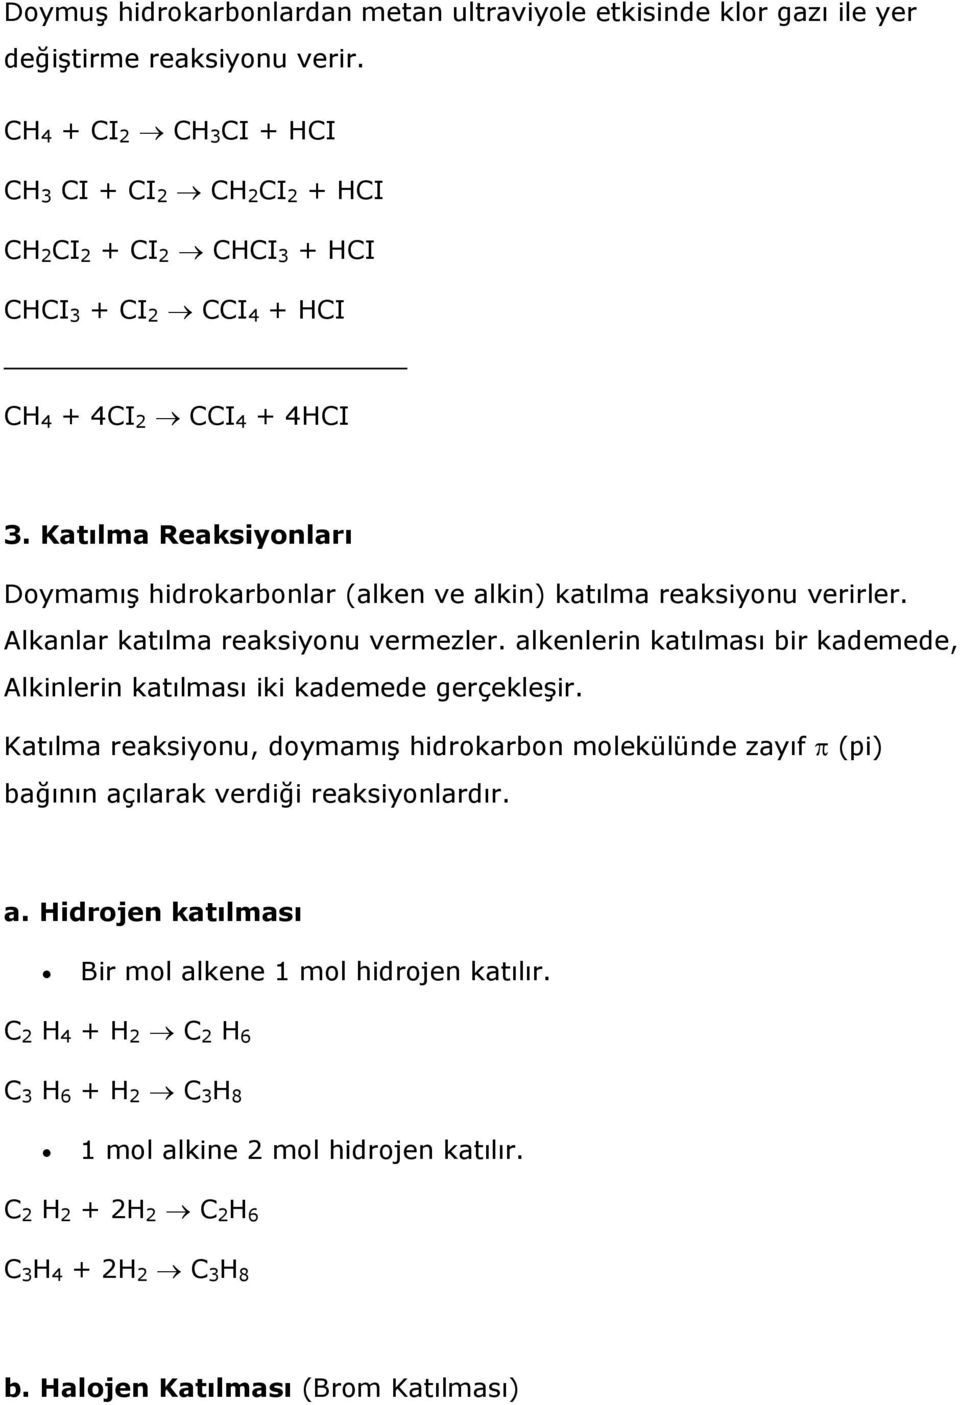 Katılma Reaksiyonları Doymamış hidrokarbonlar (alken ve alkin) katılma reaksiyonu verirler. Alkanlar katılma reaksiyonu vermezler.